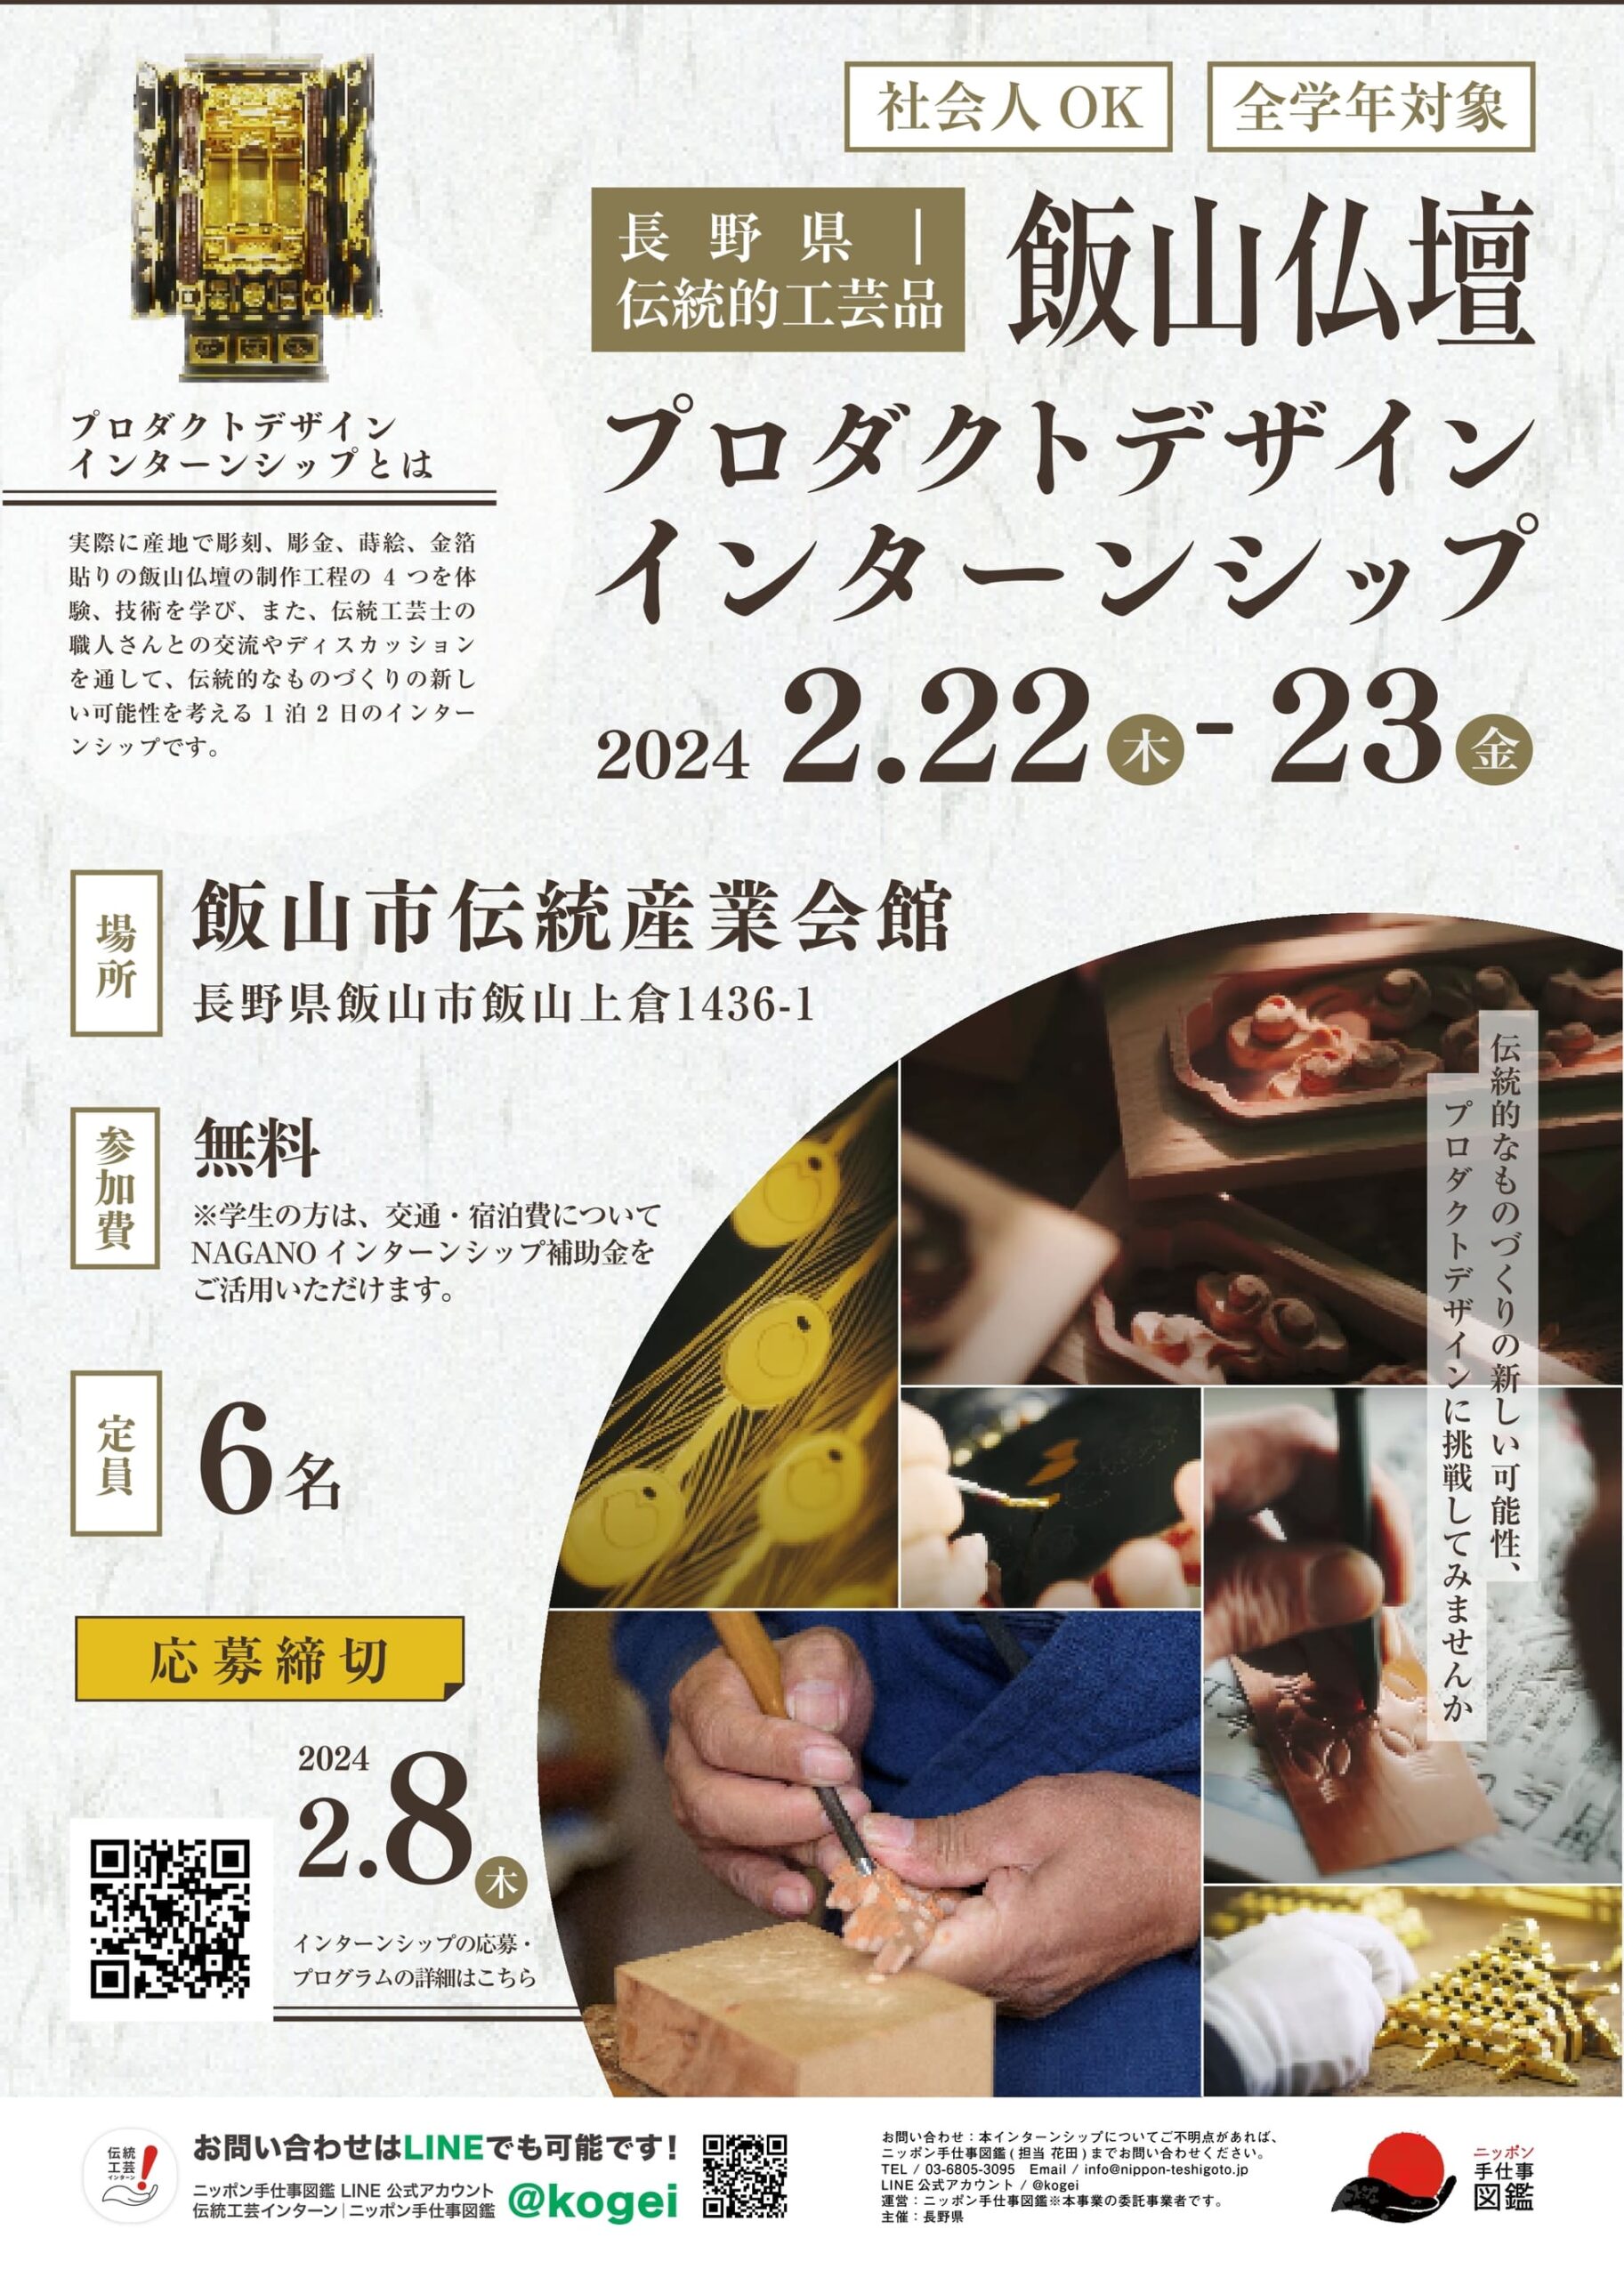 国指定伝統的工芸品飯山仏壇プロダクトデザインインターンシップポスター